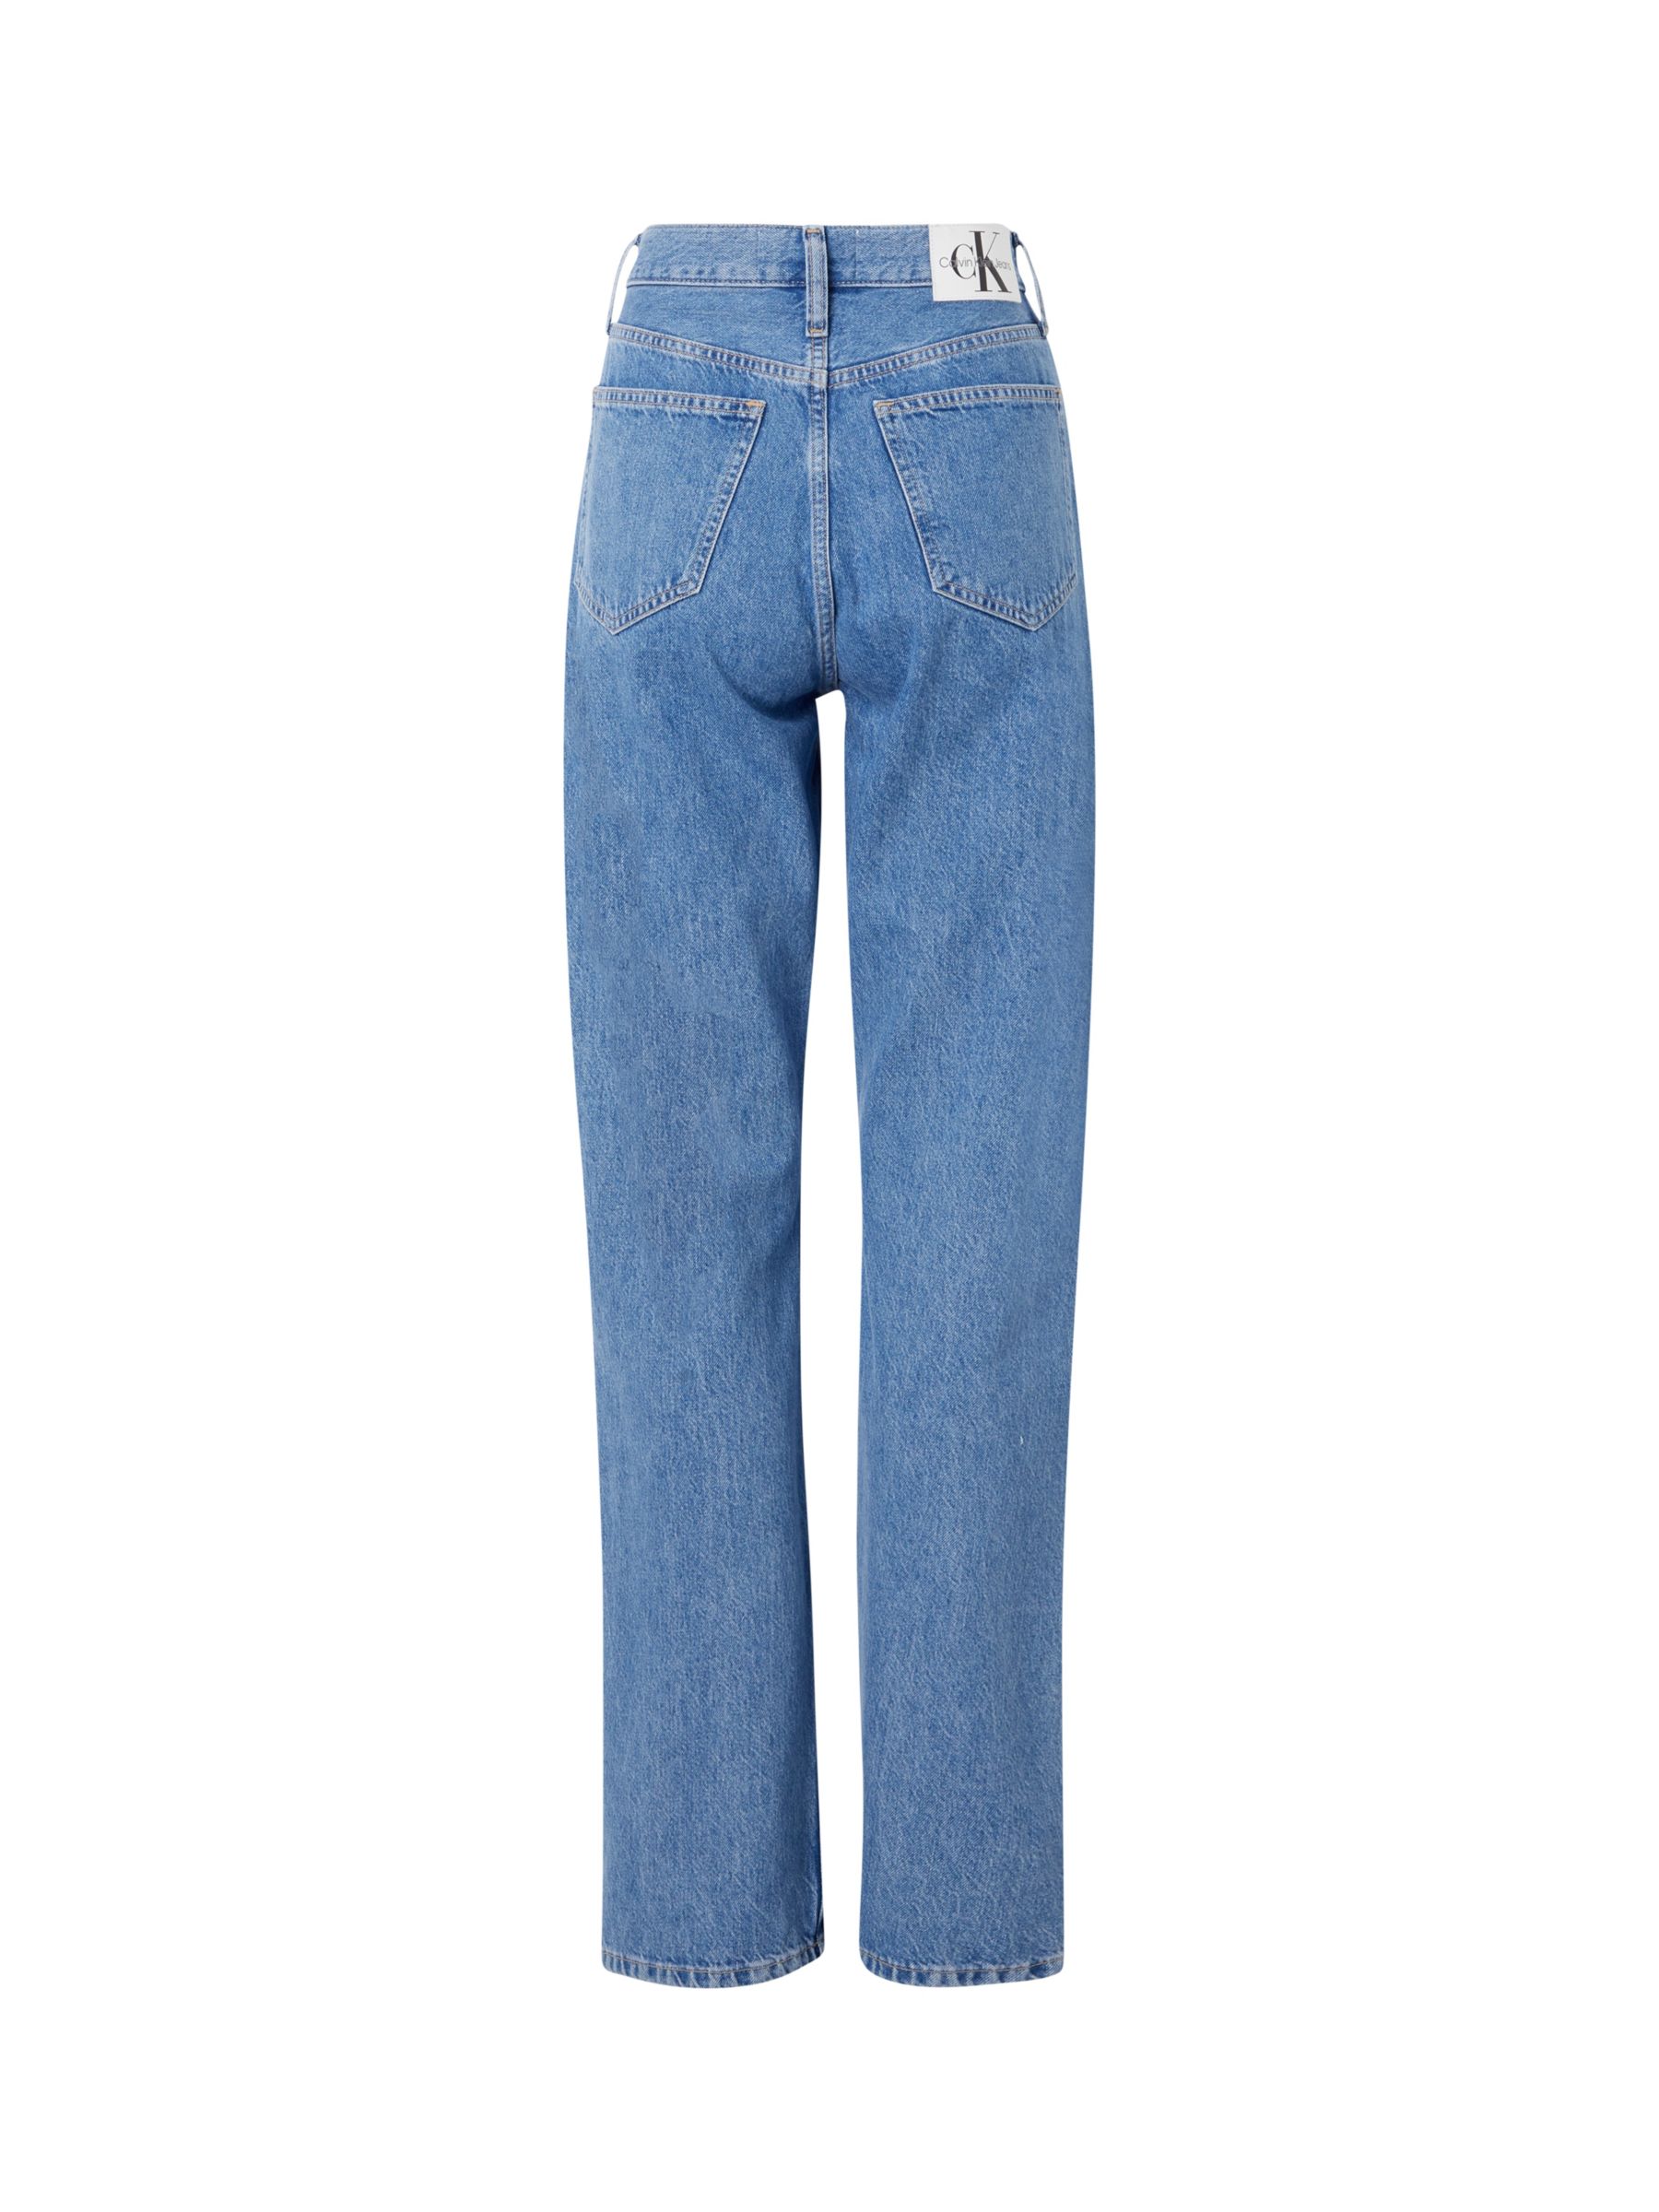 Calvin Klein High Rise Straight Leg Jeans, Denim Medium, 27R